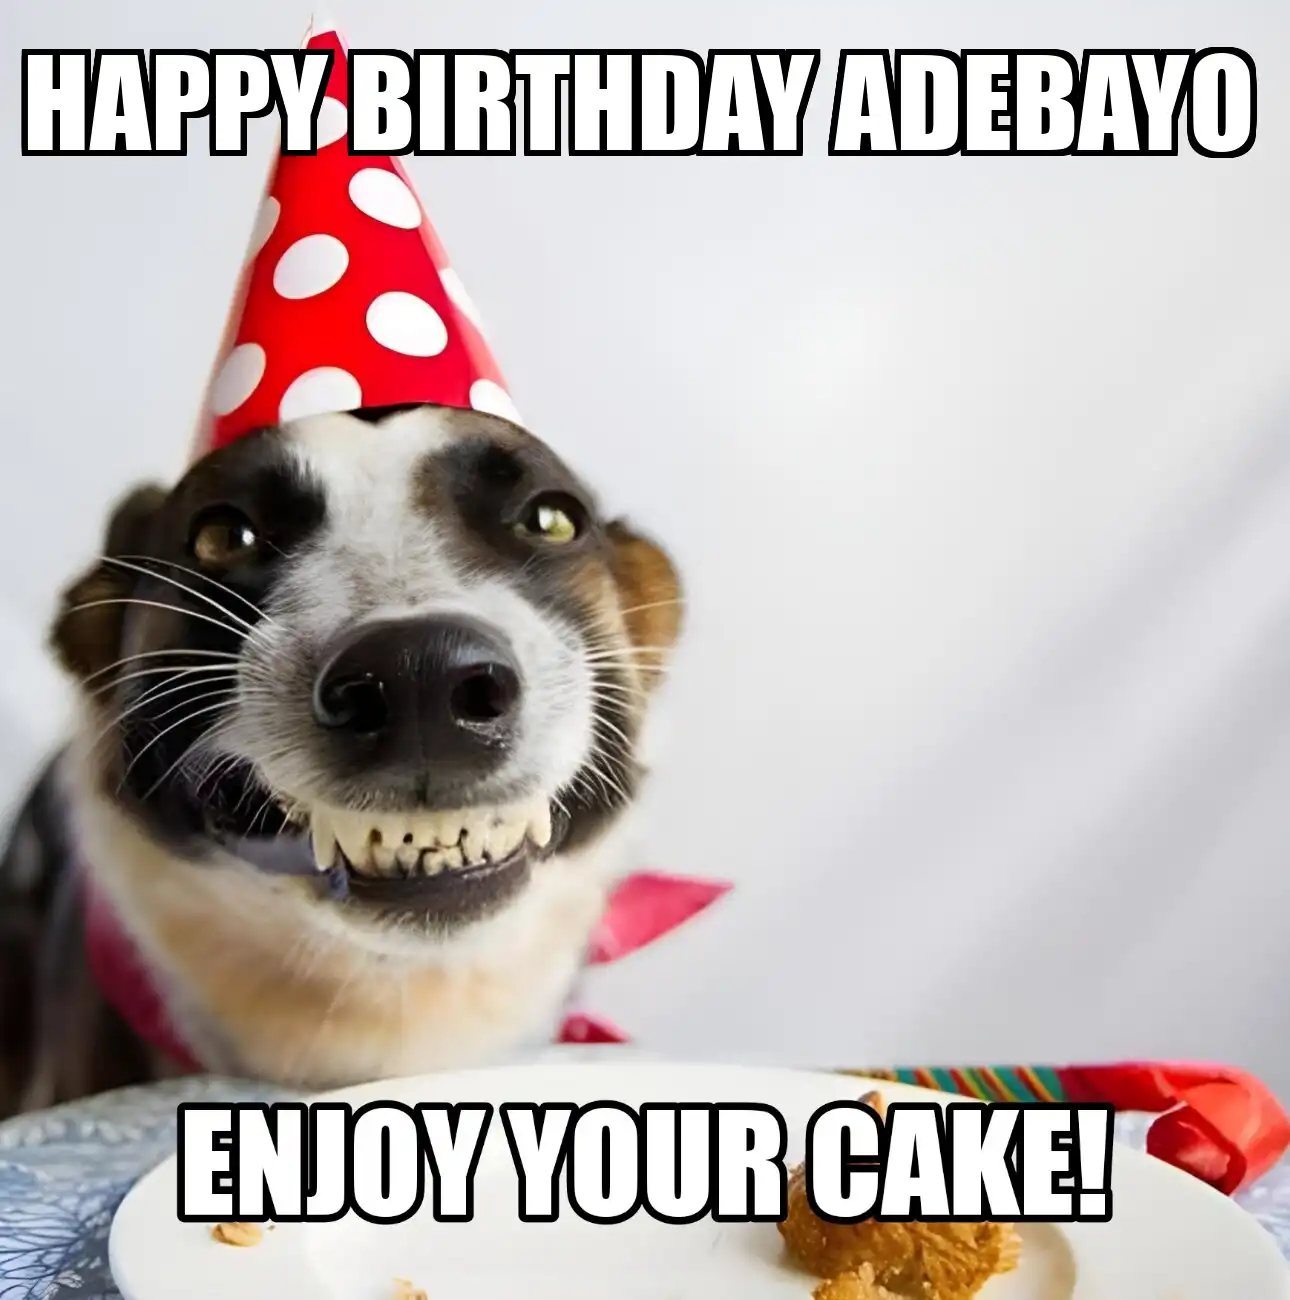 Happy Birthday Adebayo Enjoy Your Cake Dog Meme